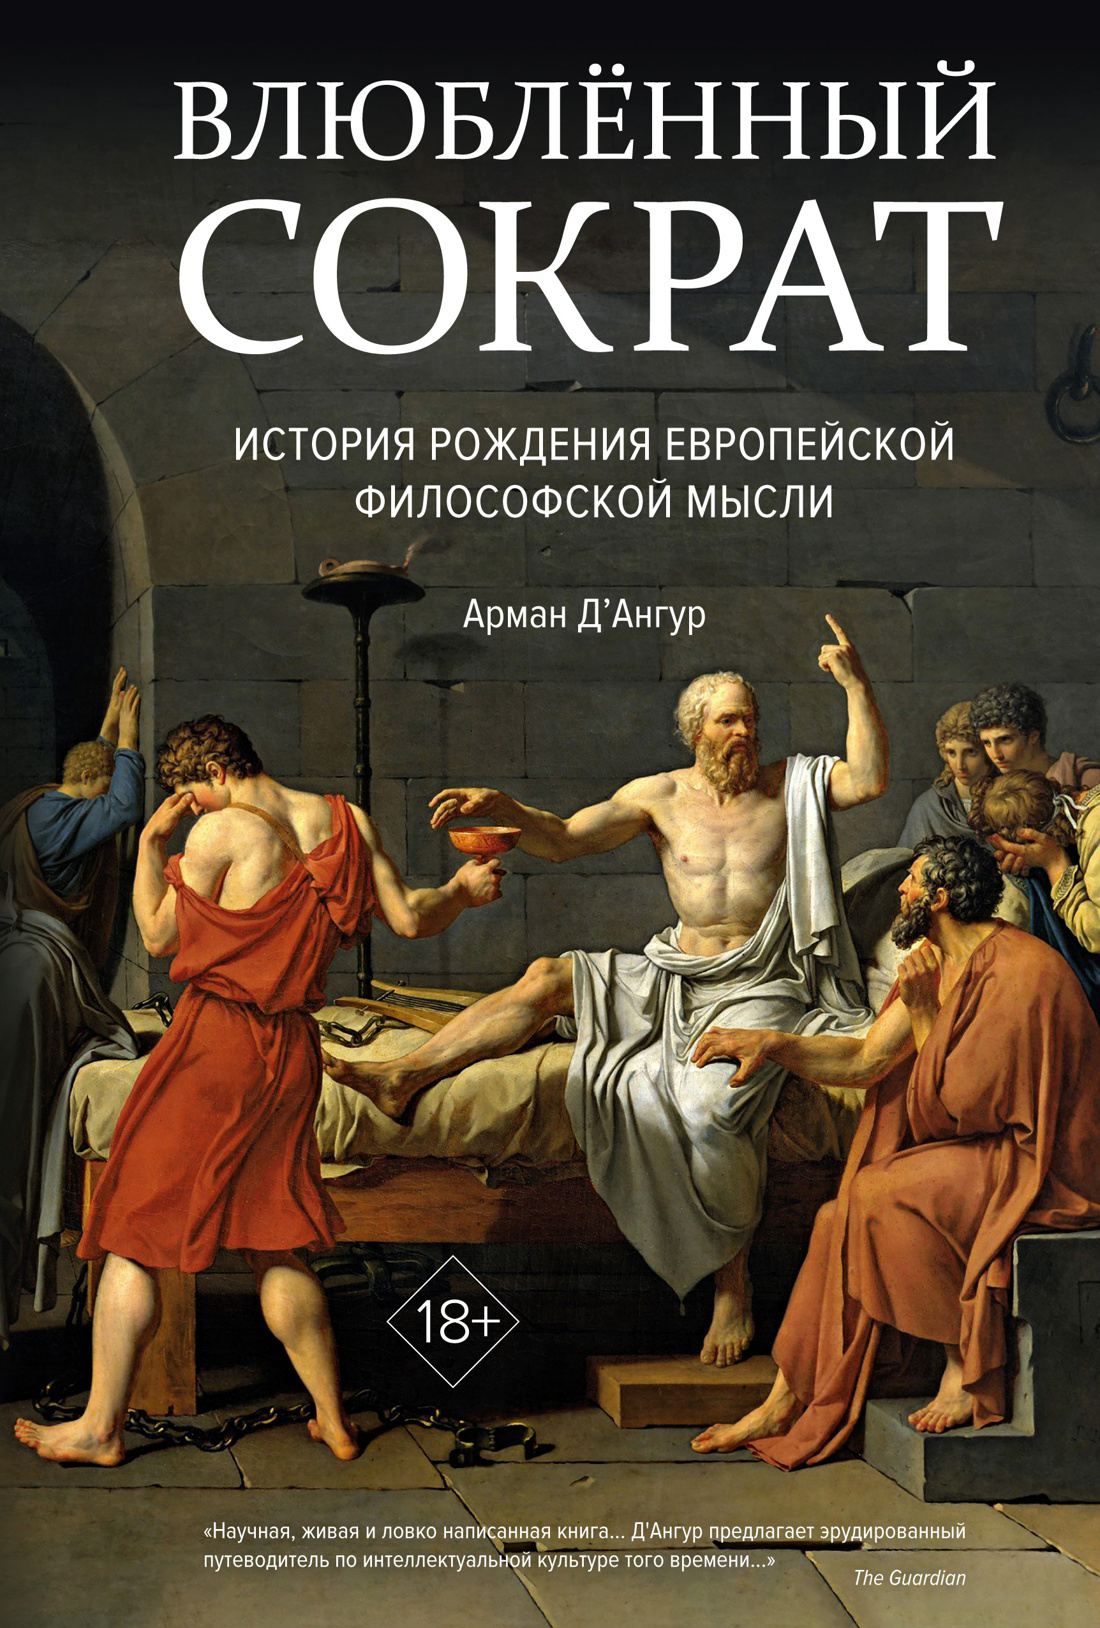 Д'Ангур Арман Влюбленный Сократ. История рождения европейской философской мысли